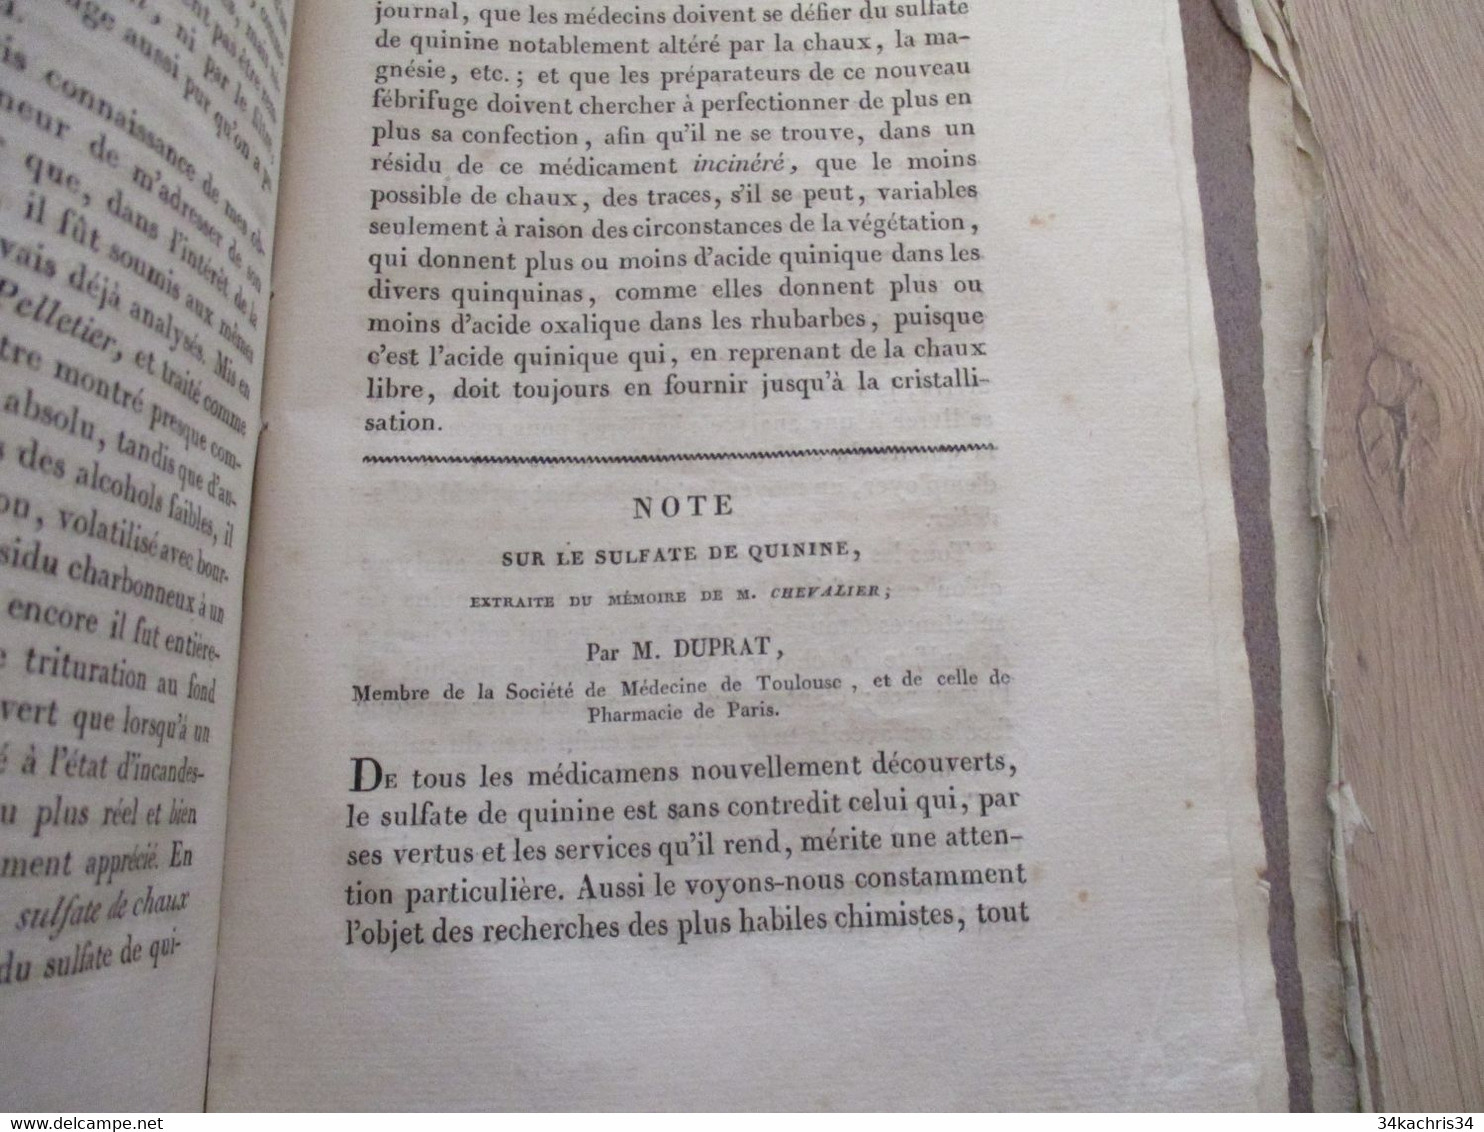 Journal de La société de Médecine de Toulouse 1826 colique Gaillard hernies syphilis....